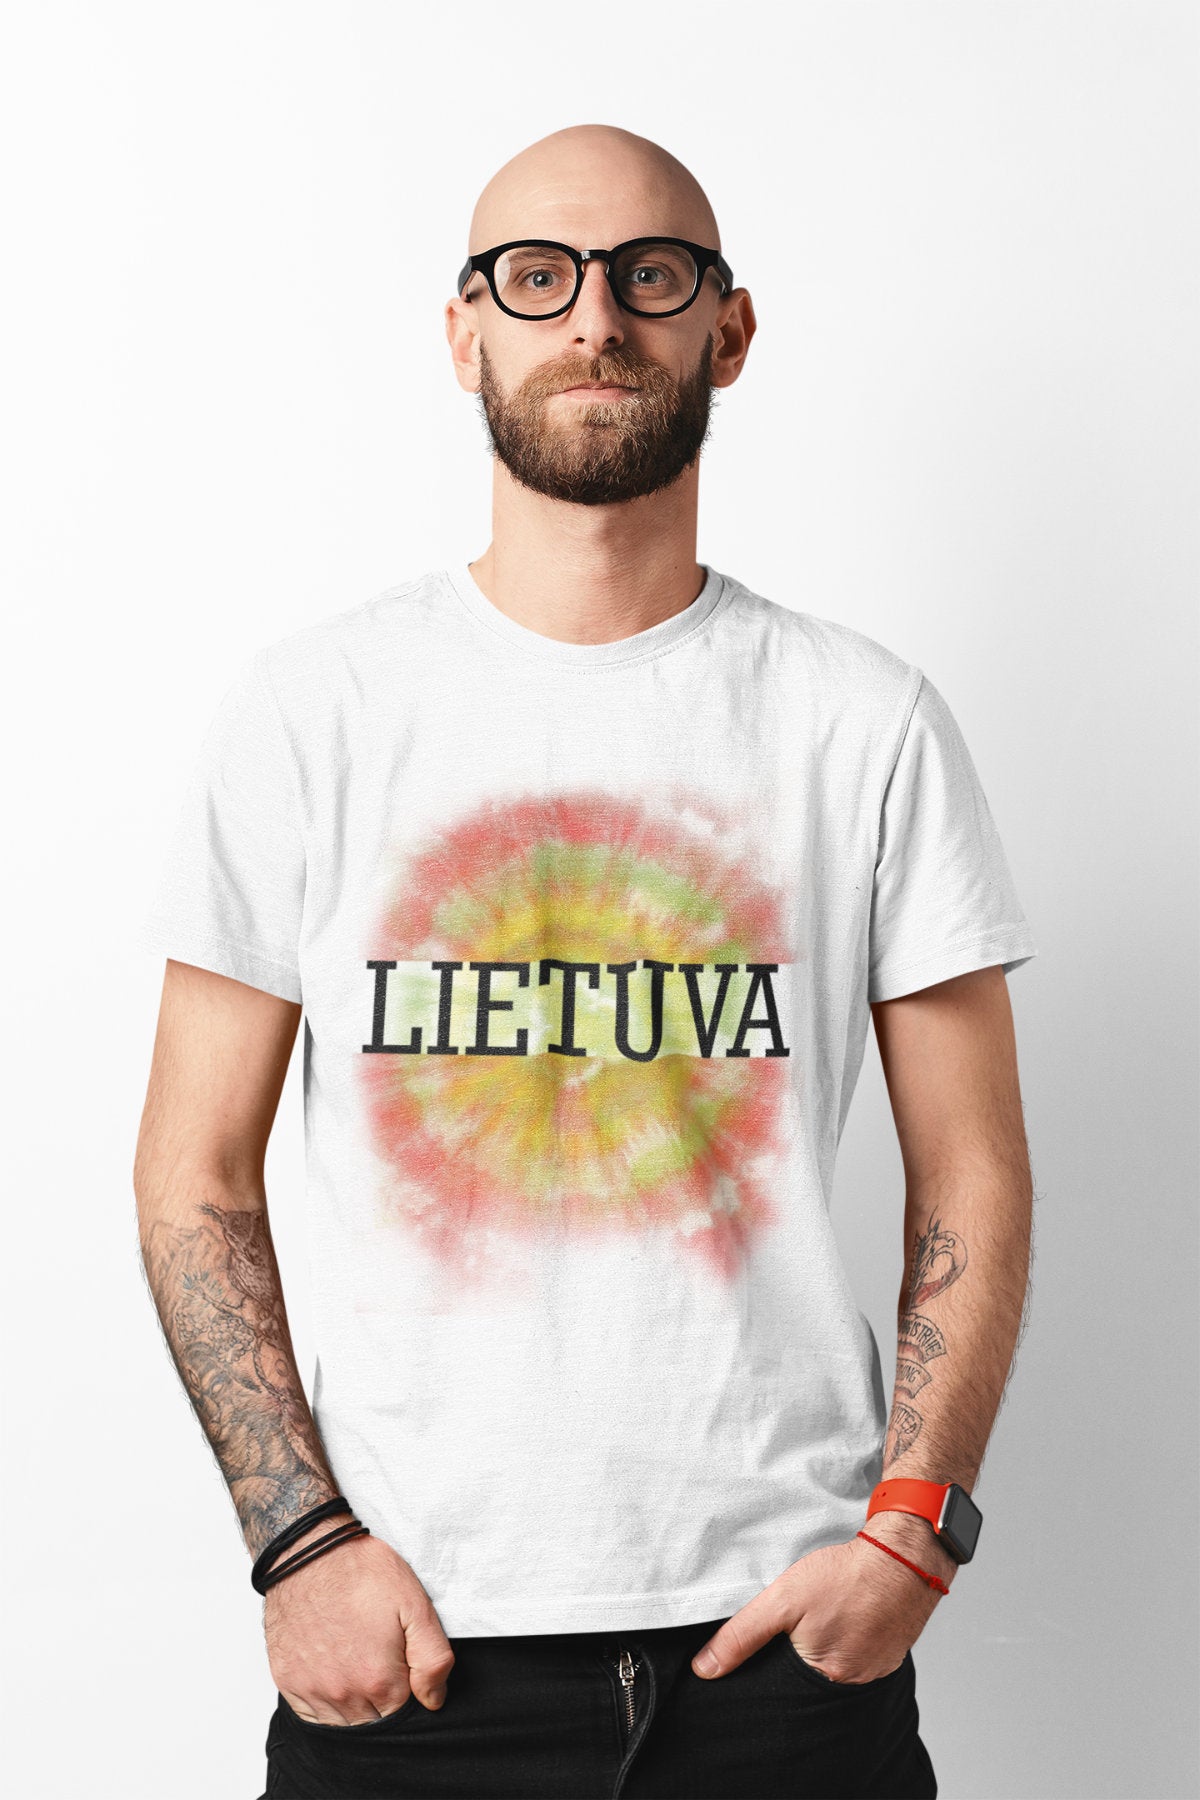 Balti UNISEX marškinėliai "Lietuvos batika"